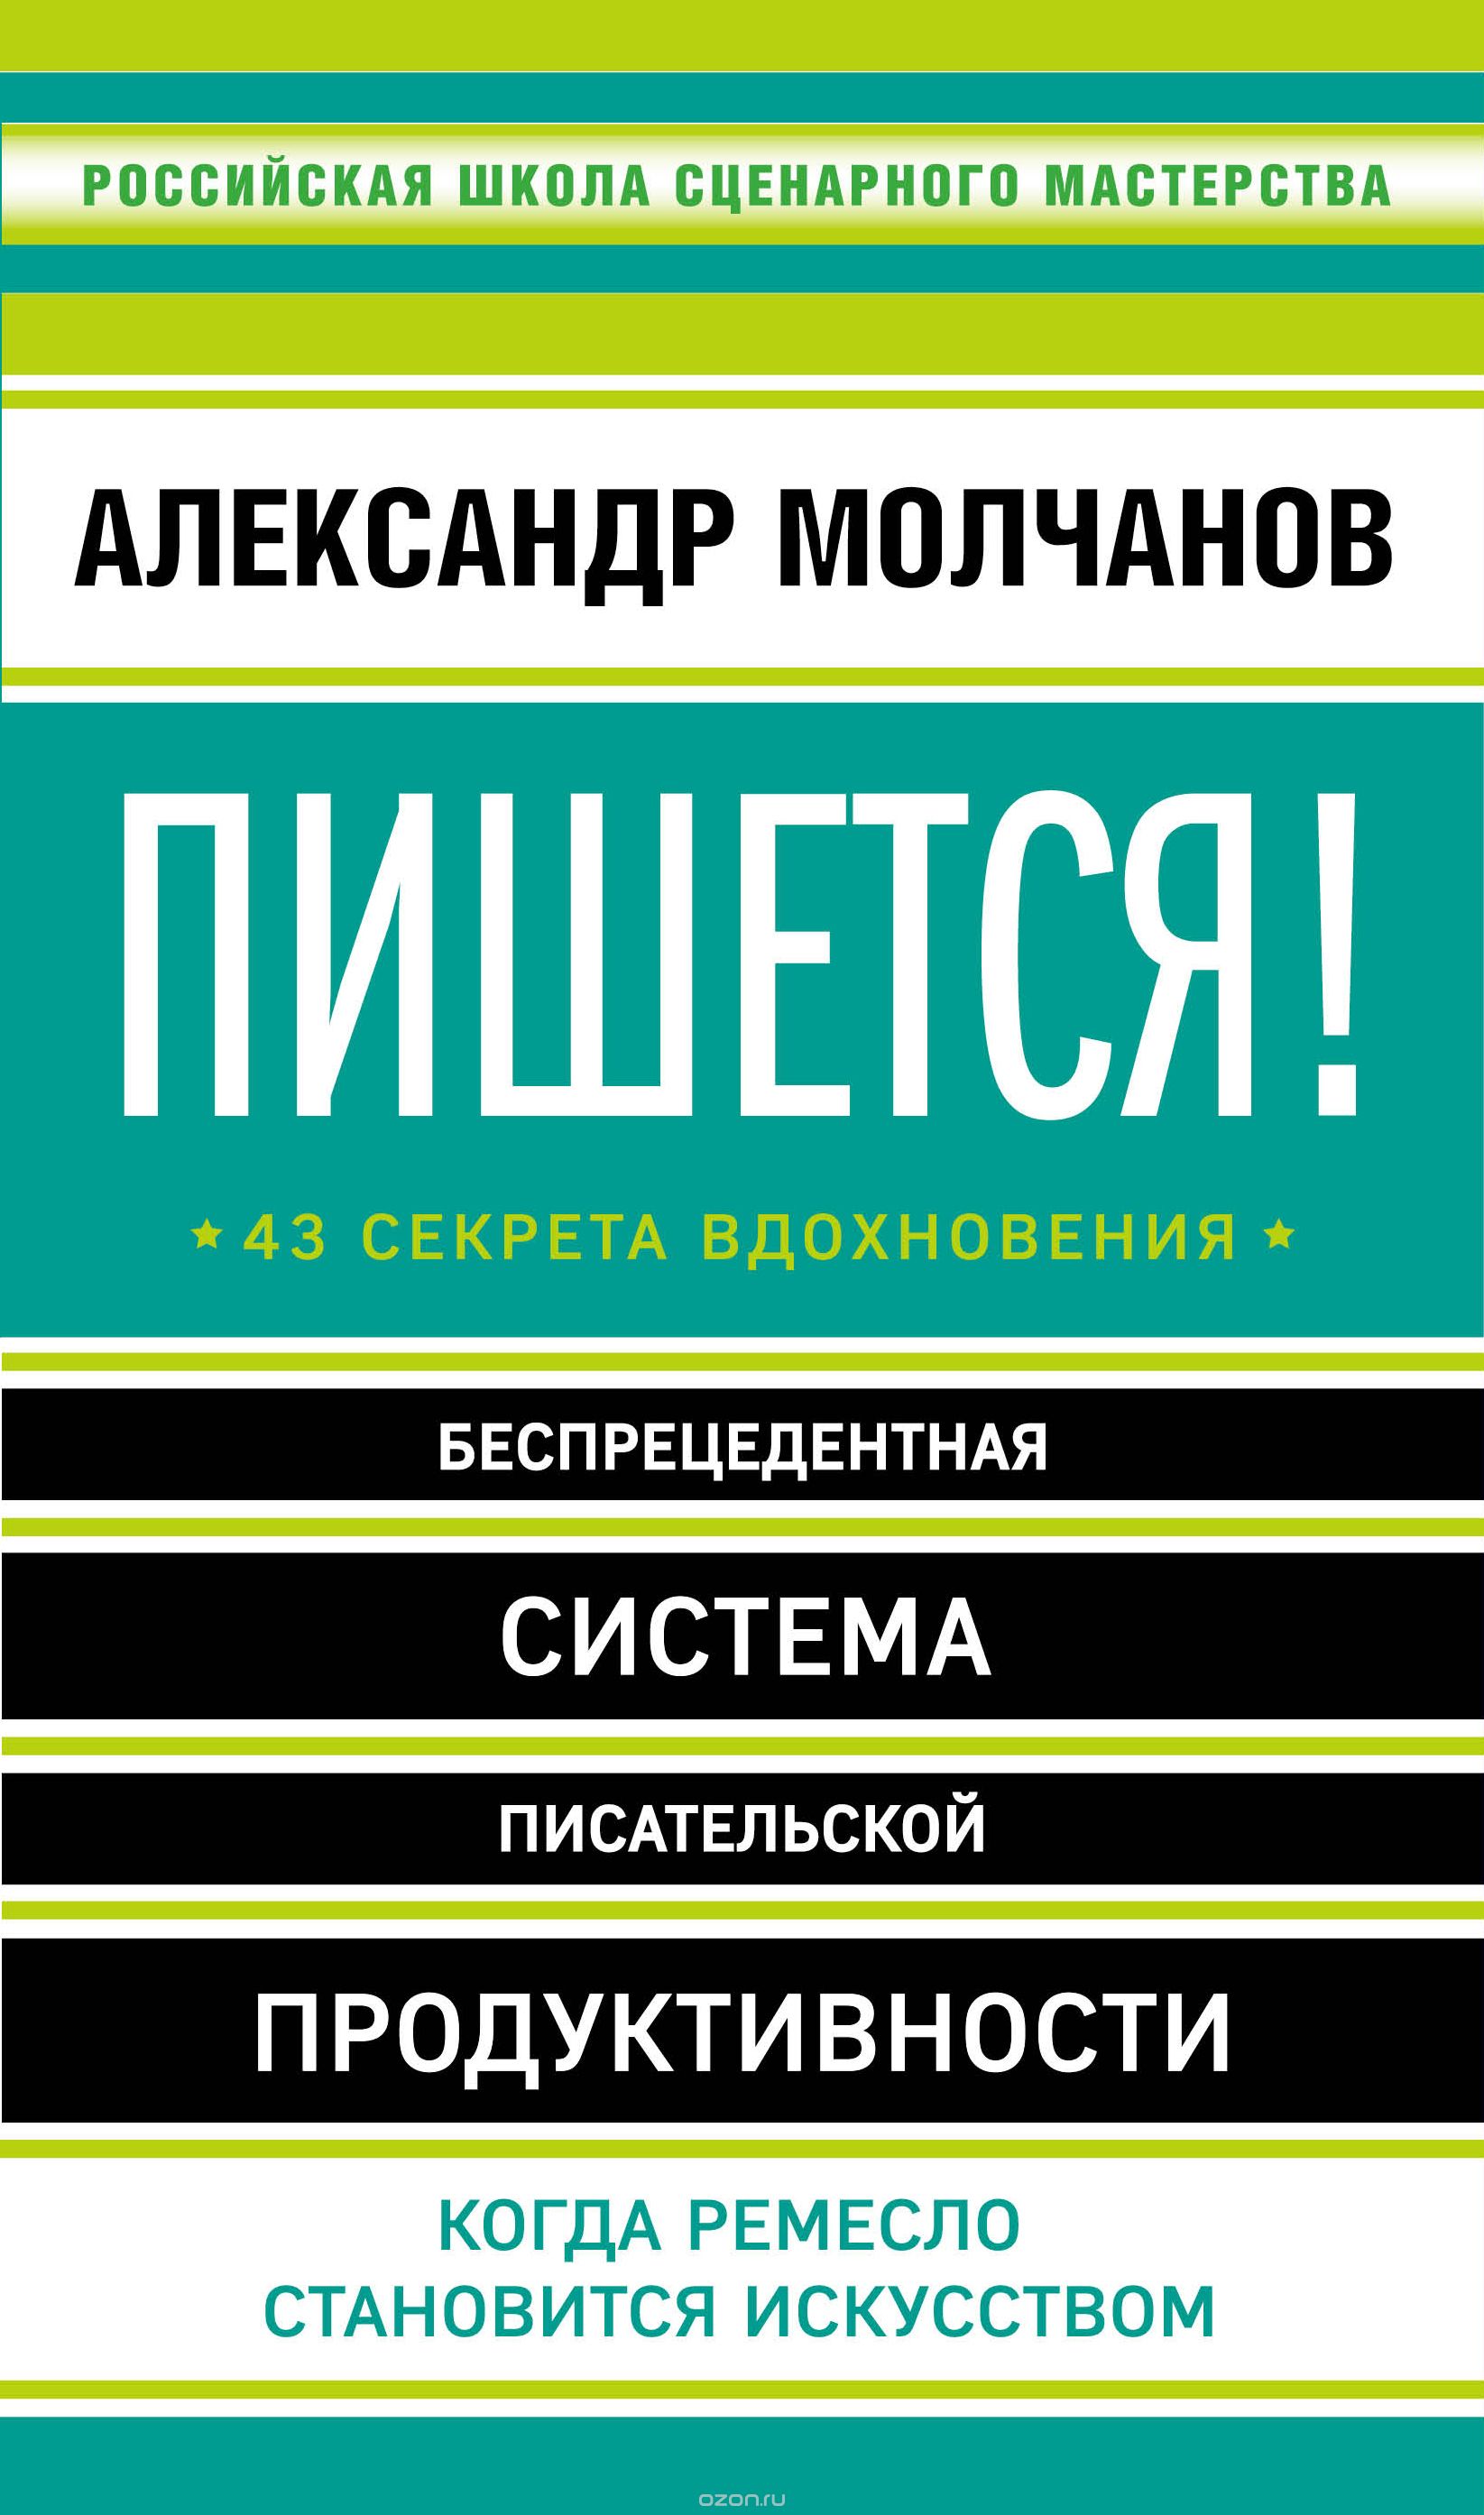 Скачать книгу "Пишется! Беспрецедентная система писательской продуктивности, Александр Молчанов"